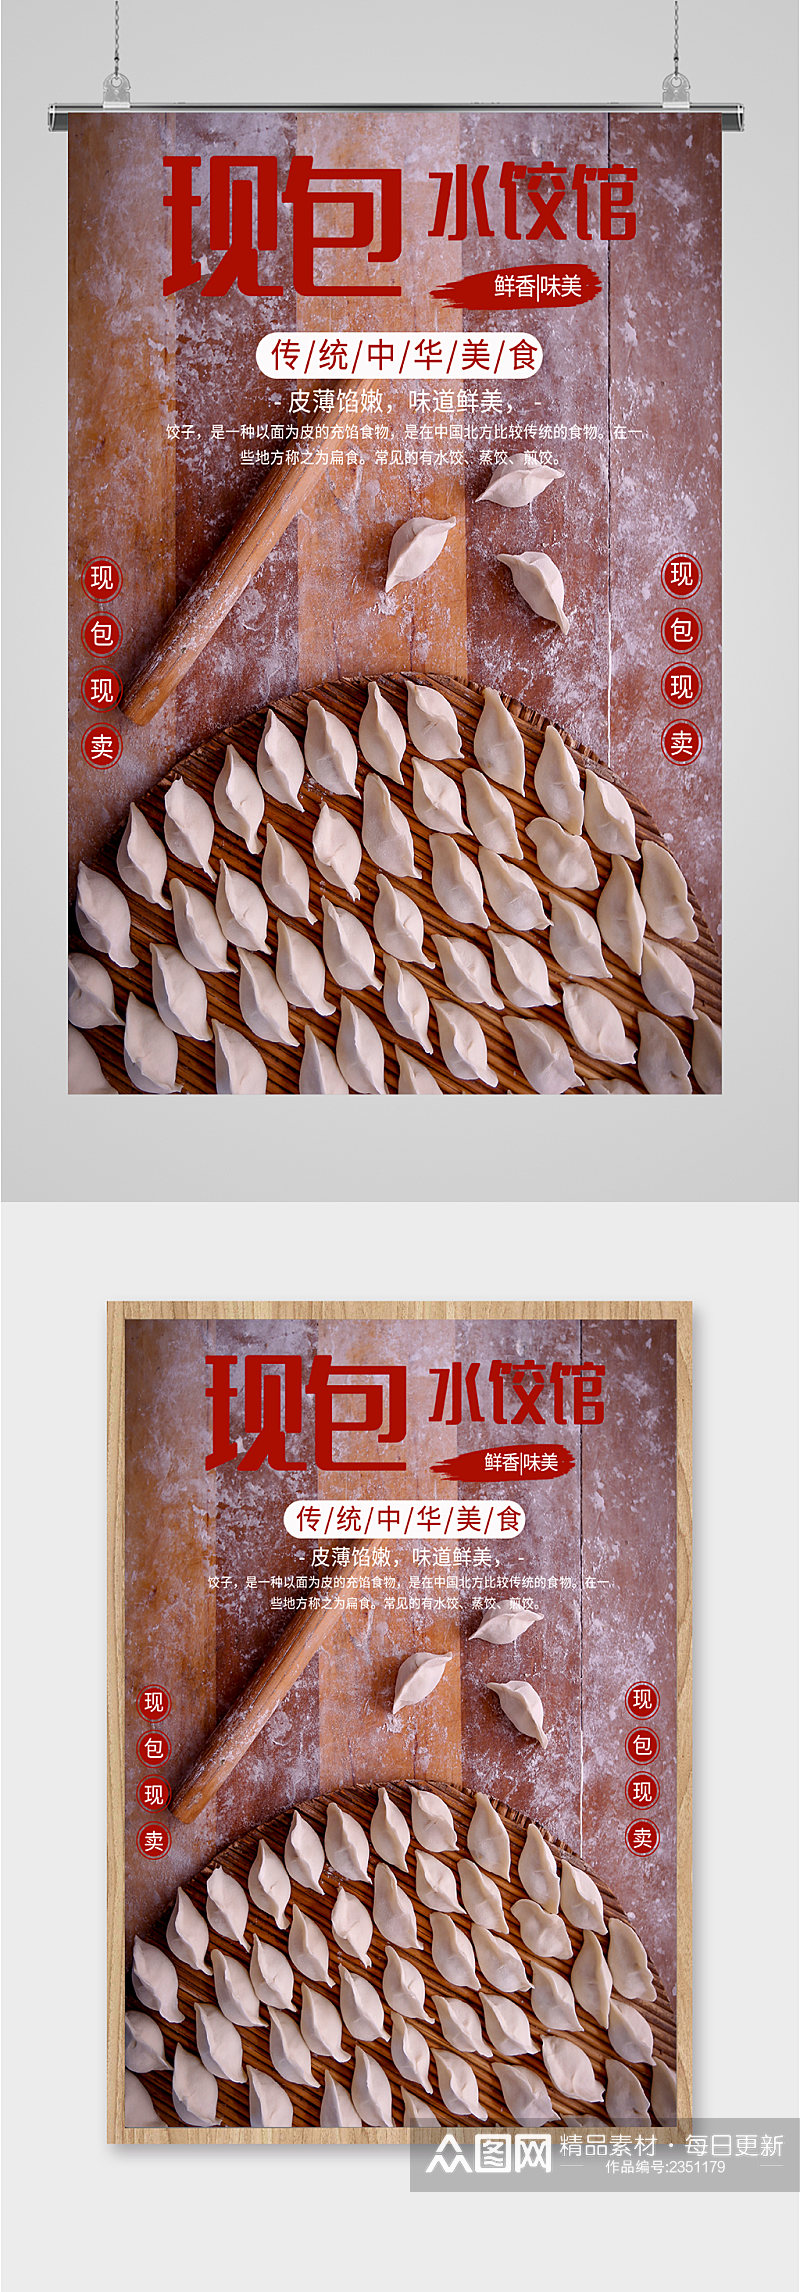 传统美食水饺海报素材